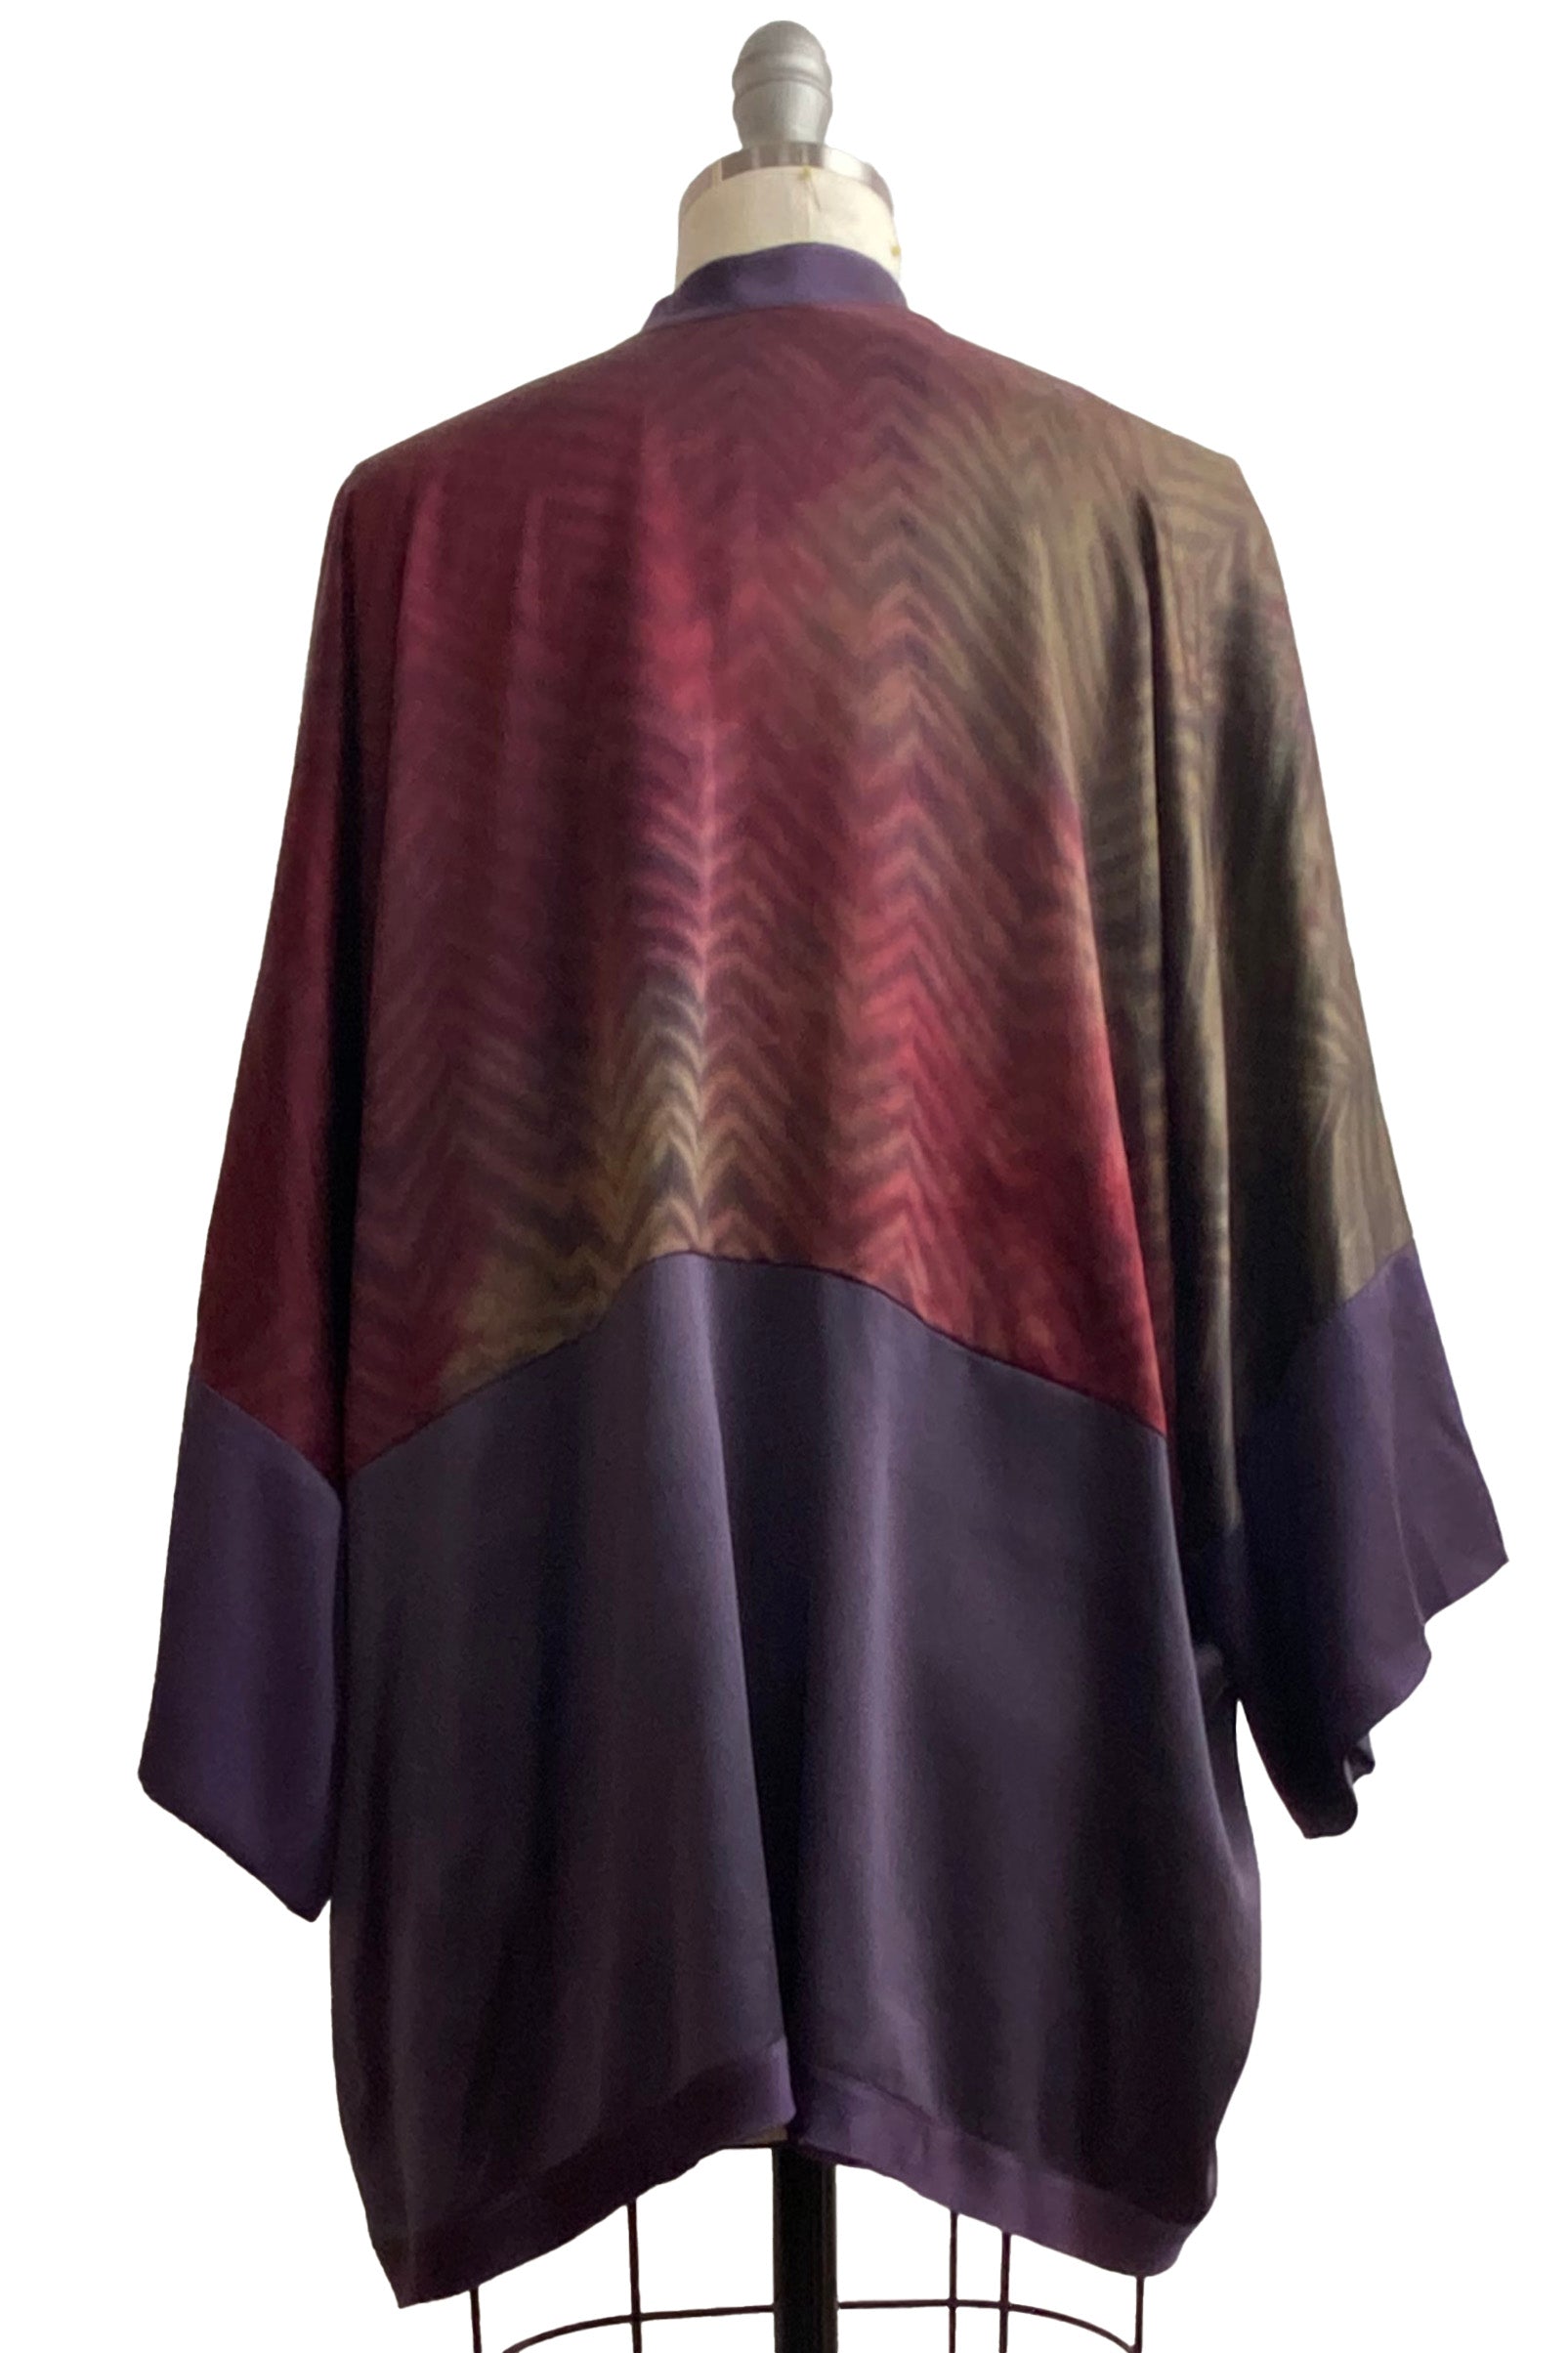 Lucianne Kimono w/ Shibori Arashi Dye - Red, Brown, Purple & Natural